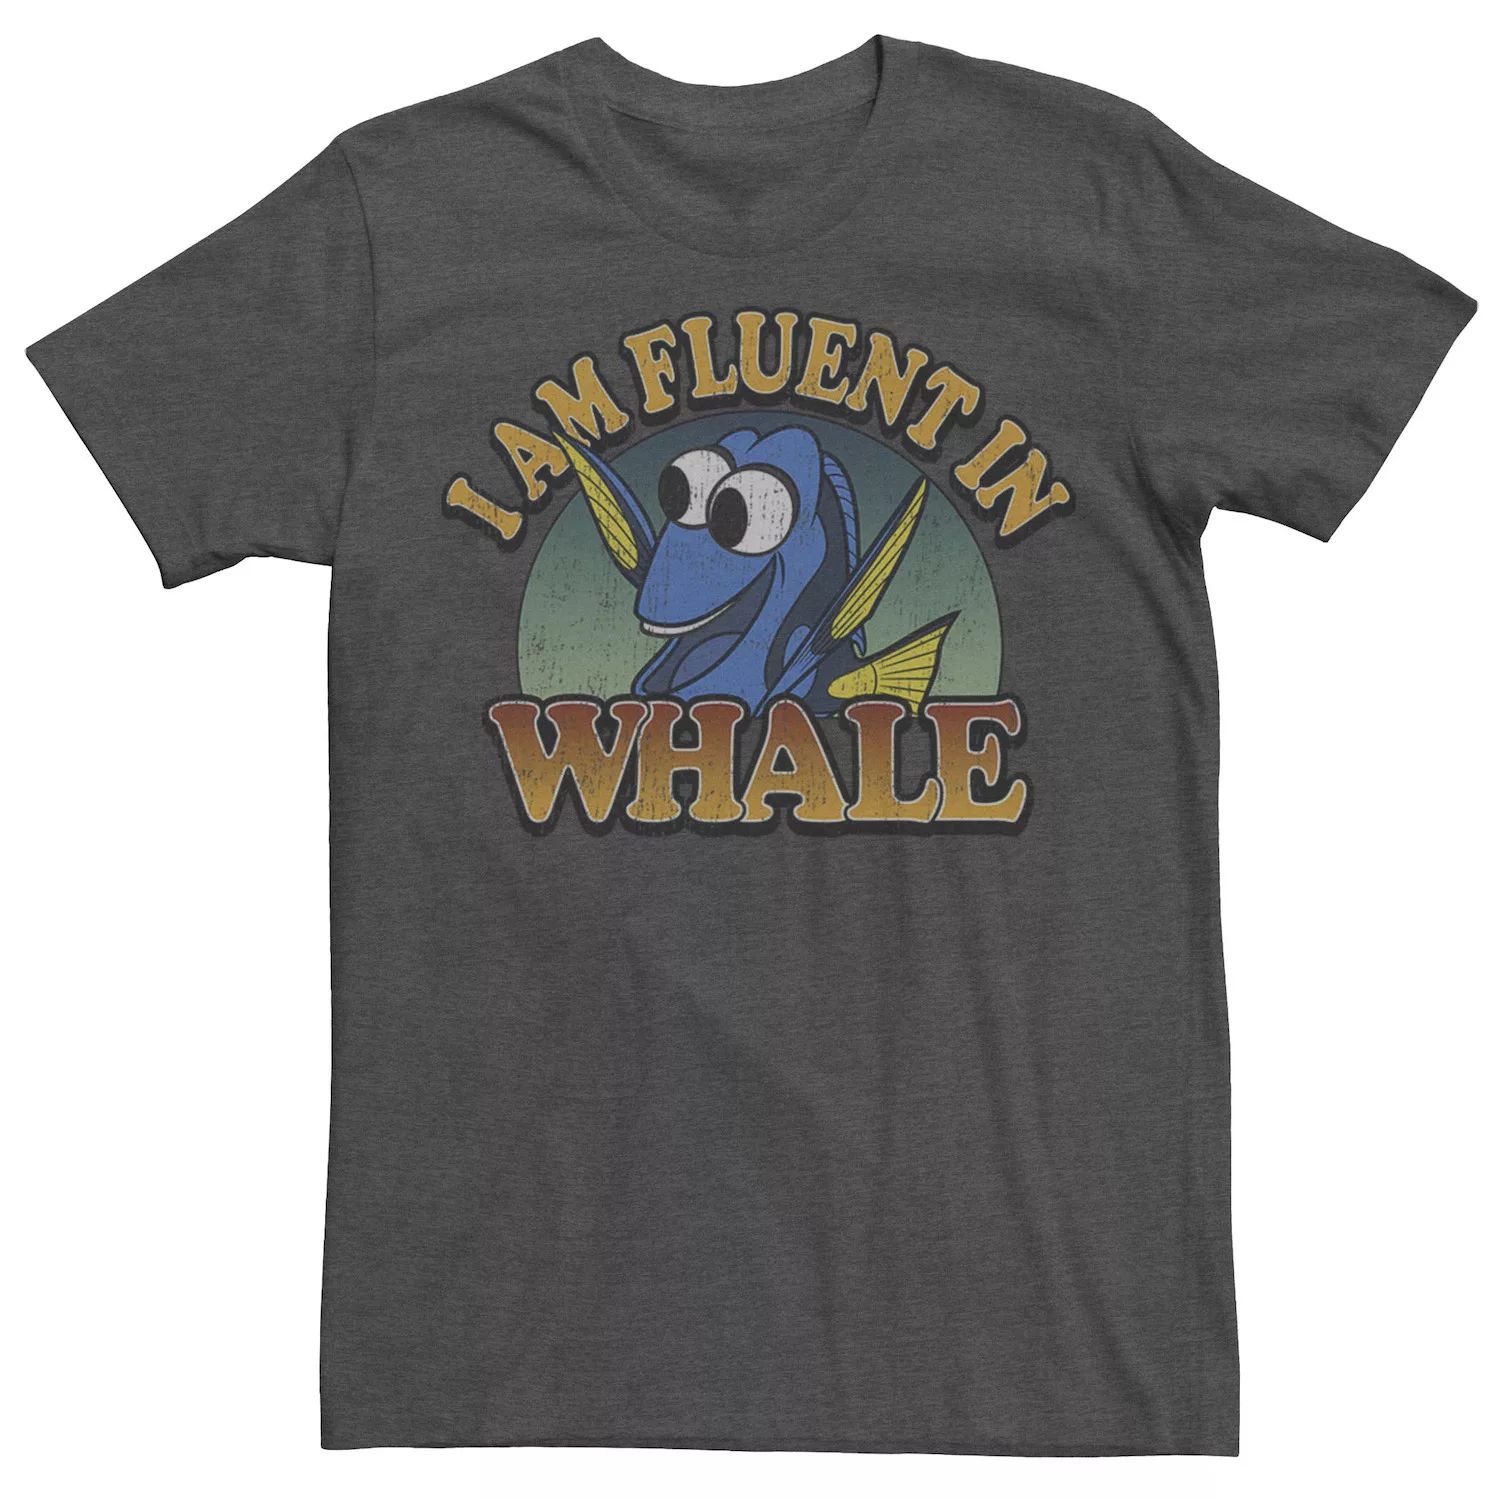 Мужская футболка Disney Finding Dory Fluent в футболке с китом мужская майка disney pixar finding dory fluent в китовой майке disney pixar